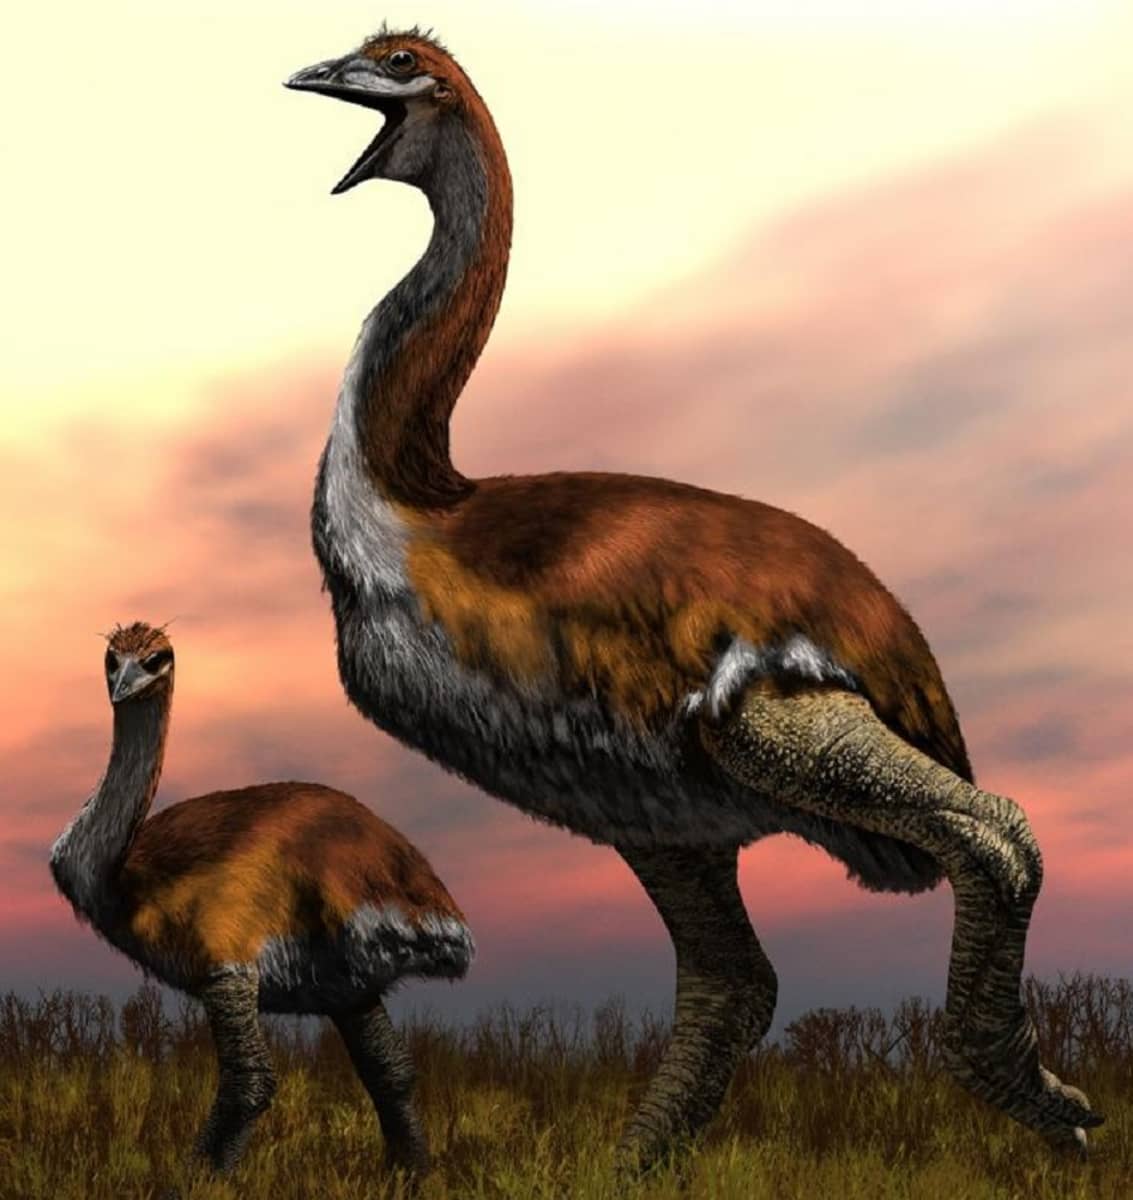 Ei höyhensarjaa: Maailman suurin lintu oli kolmimetrinen ja painoi 800  kiloa | Yle Uutiset